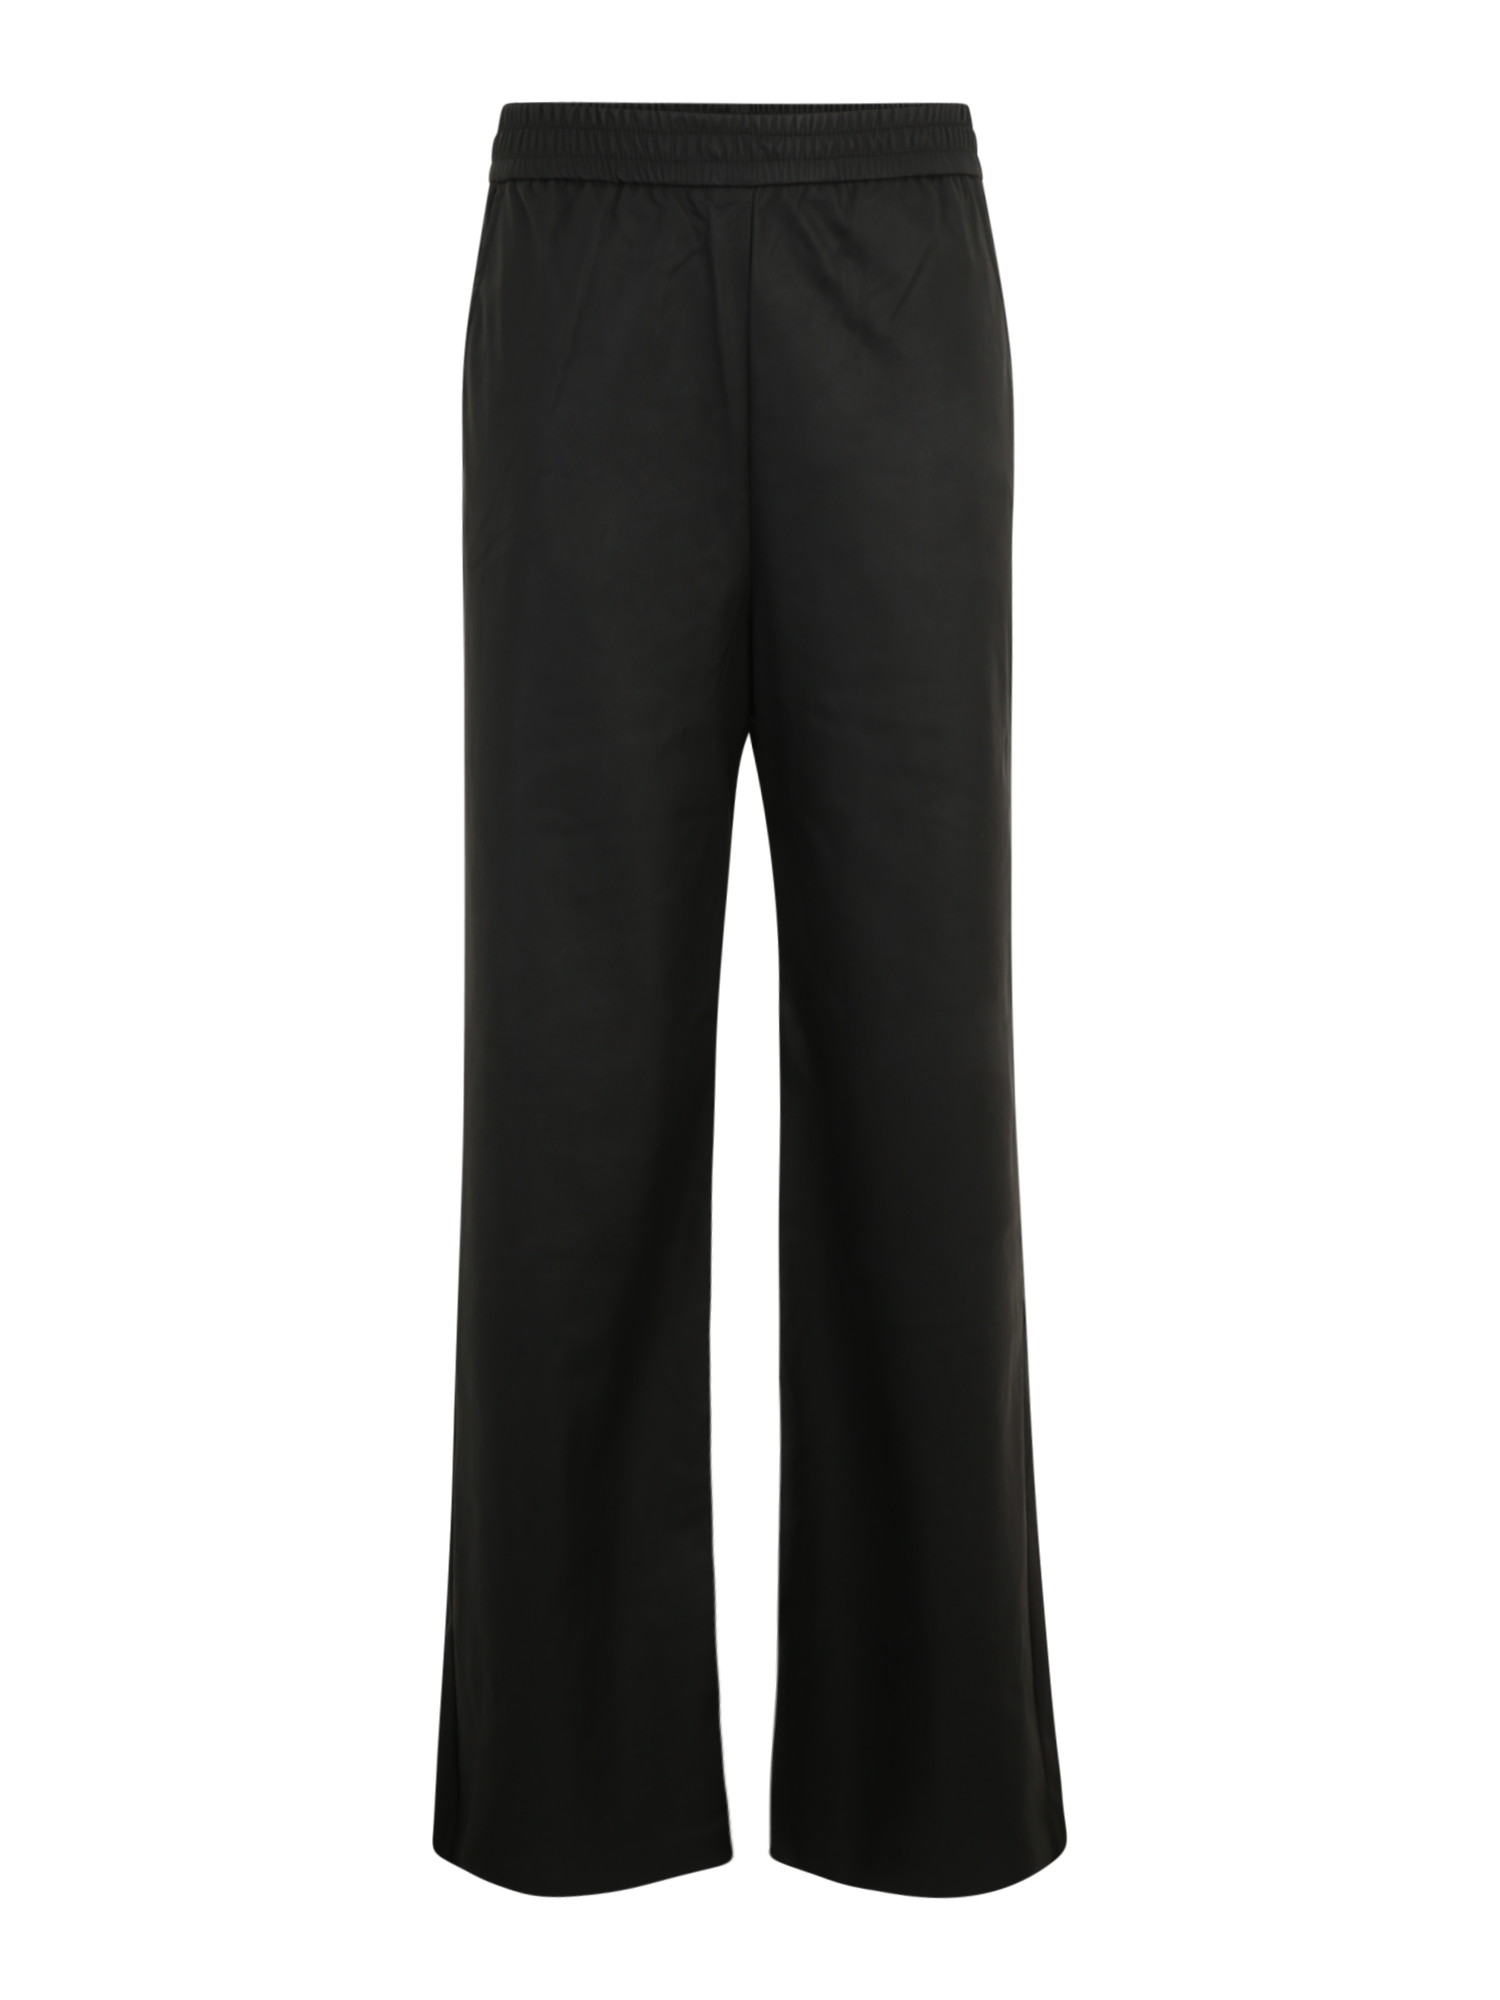 Z6OAF Odzież Only Tall Spodnie TINA w kolorze Czarnym 